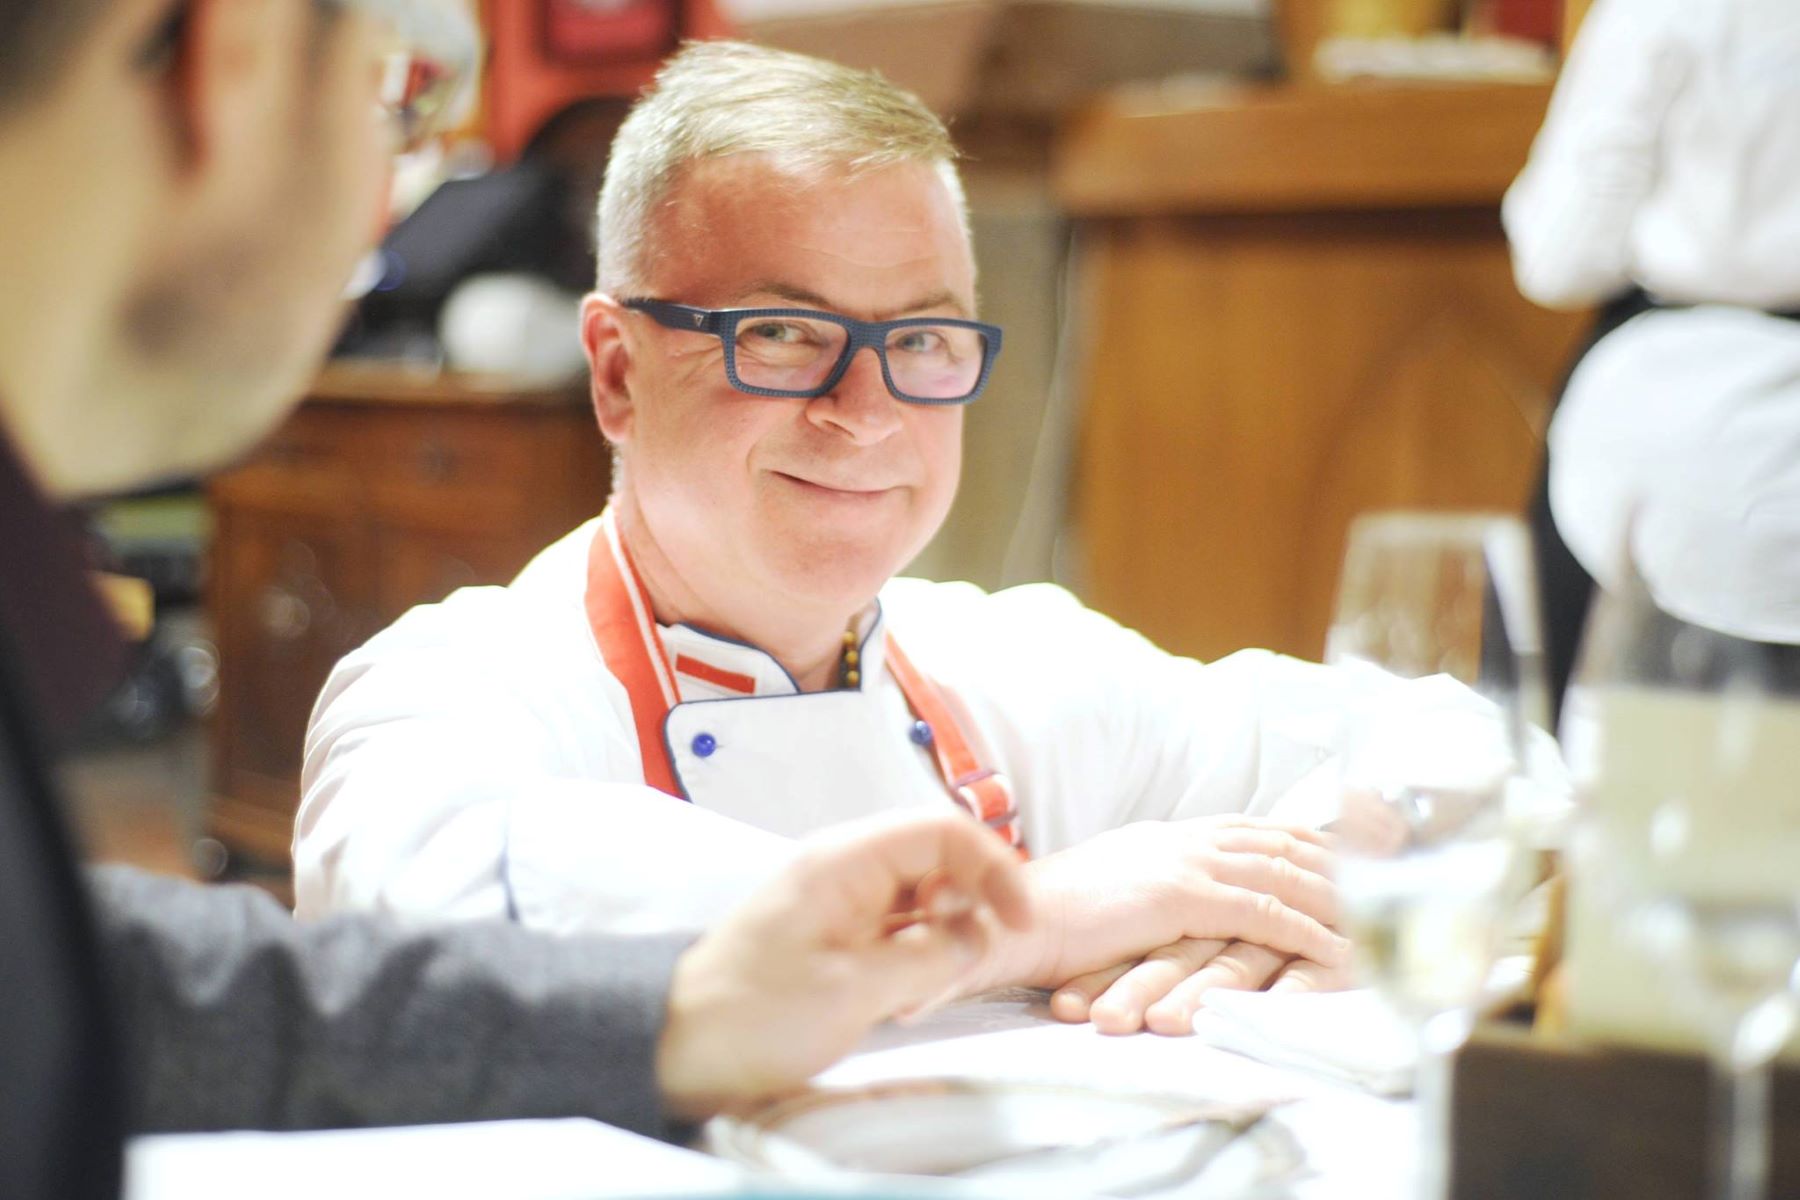 Szef kuchni Bogdan Gałązka siedzi przy stole, lekko się uśmiecha.